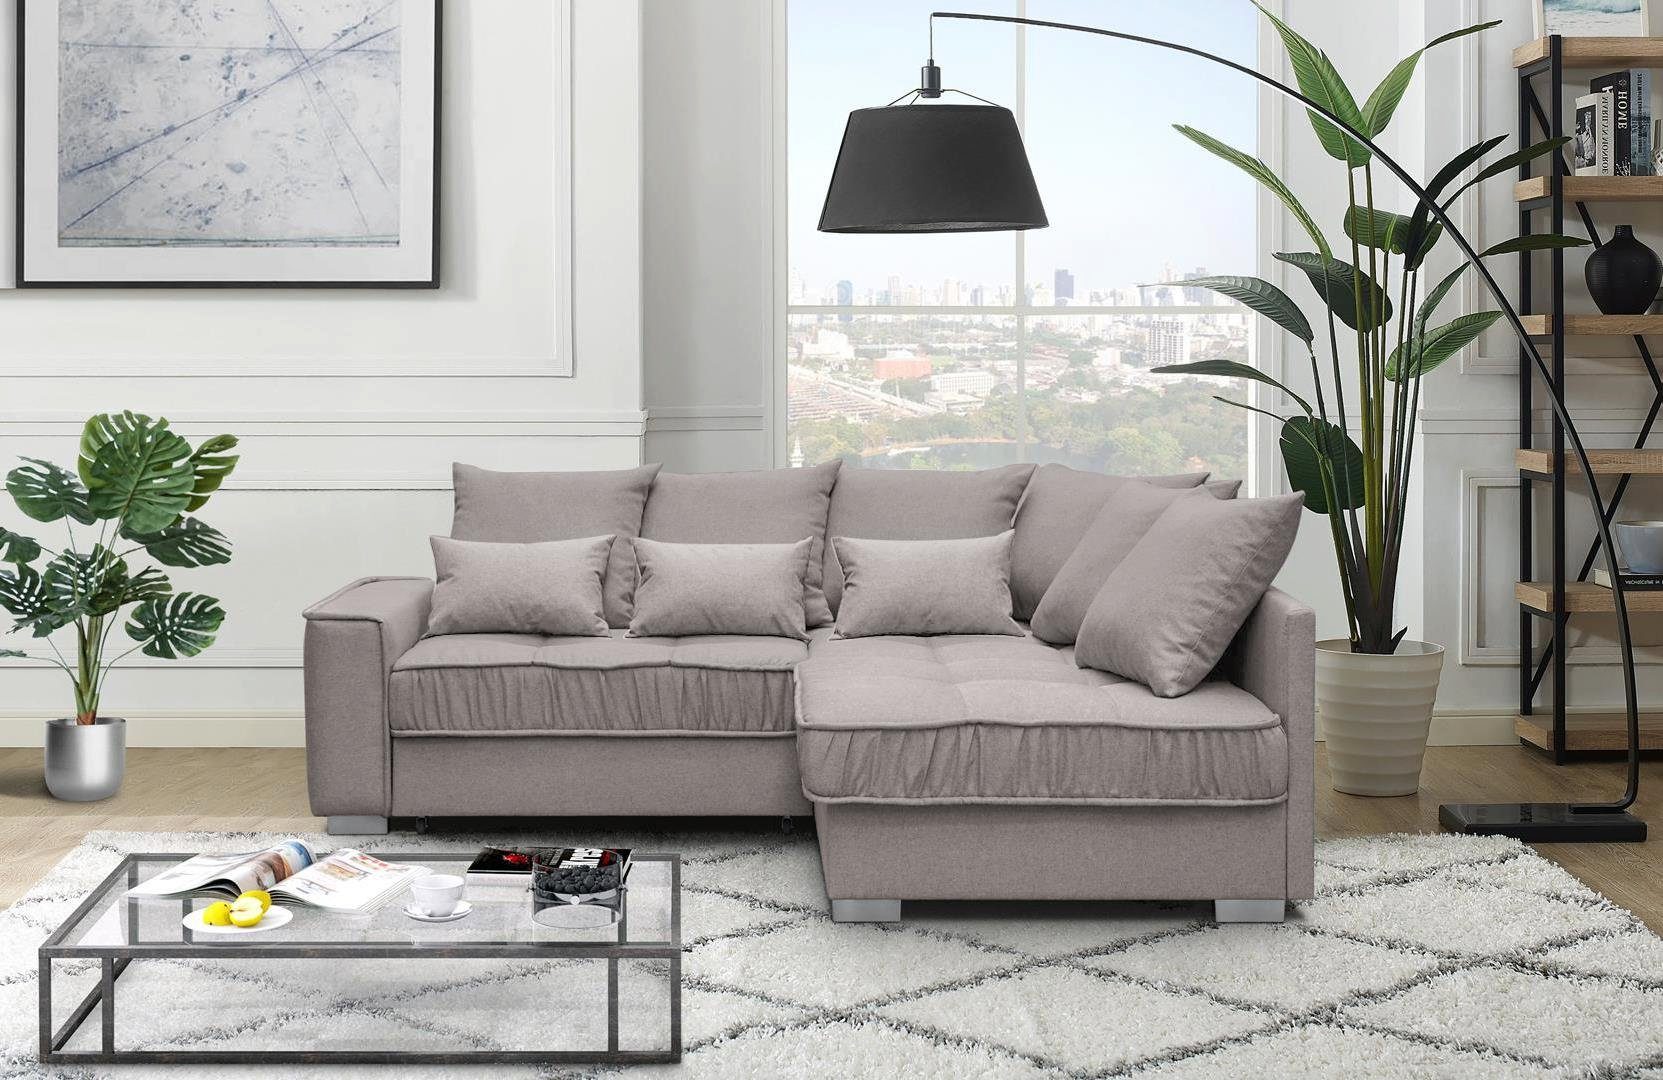 Beautysofa Polsterecke Modern Eckcouch Couch Ralf mit Bettkasten und Schlaffunktion Sofa Cappucino (rino 11 + rino 03)